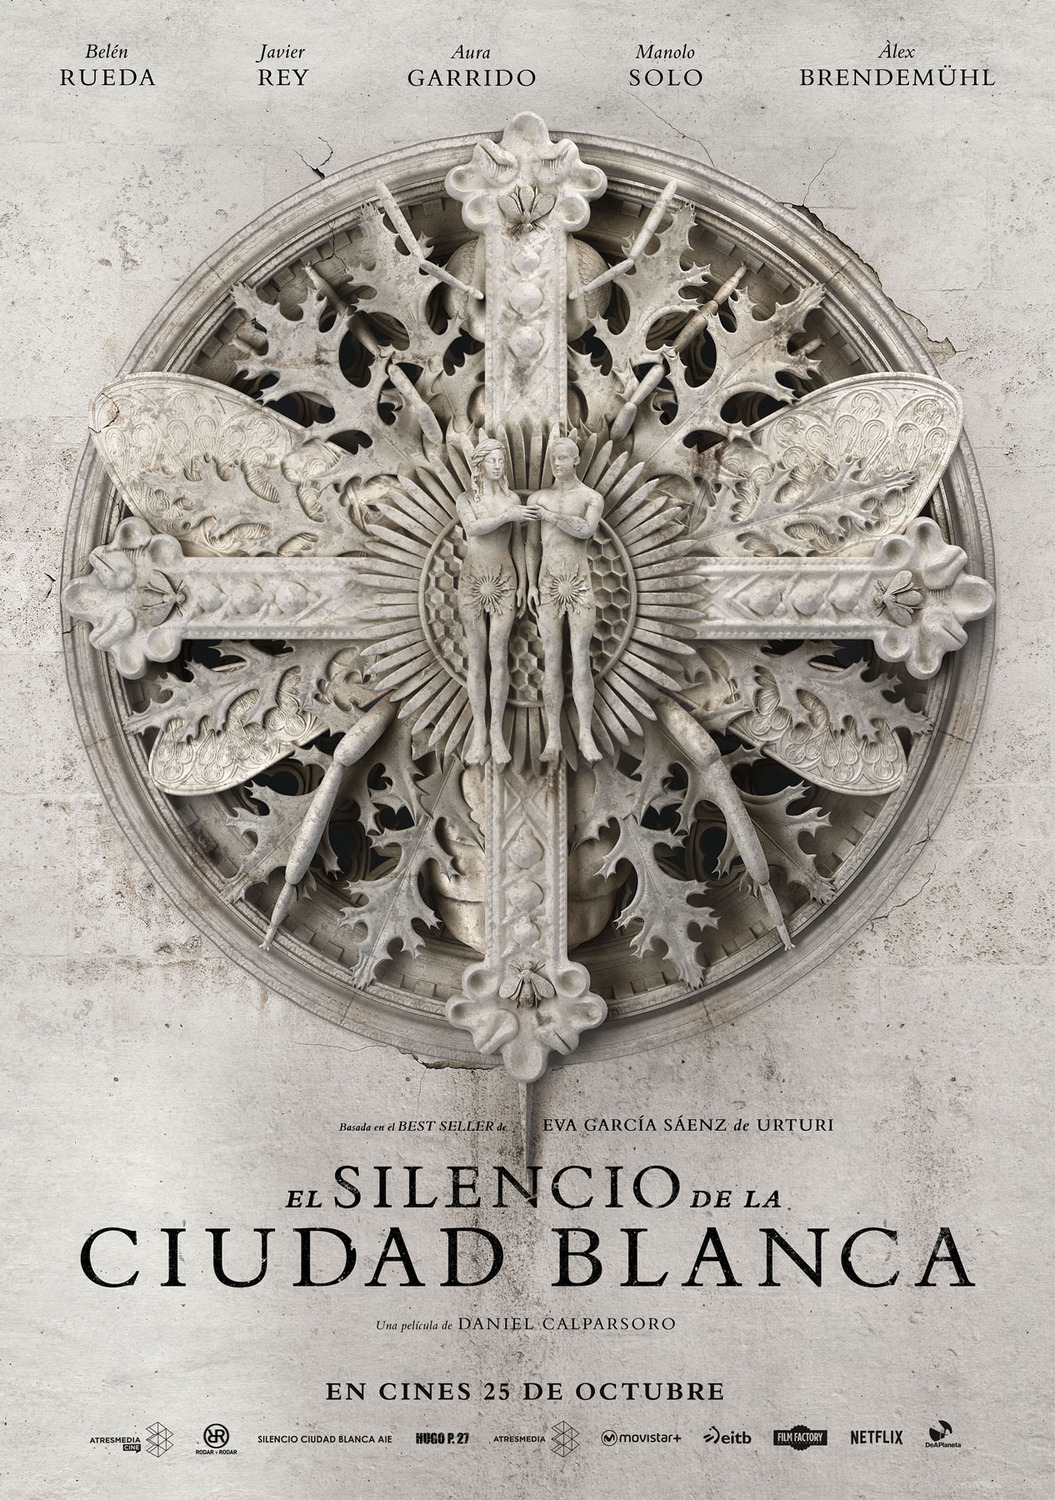 Extra Large Movie Poster Image for El silencio de la ciudad blanca (#2 of 2)